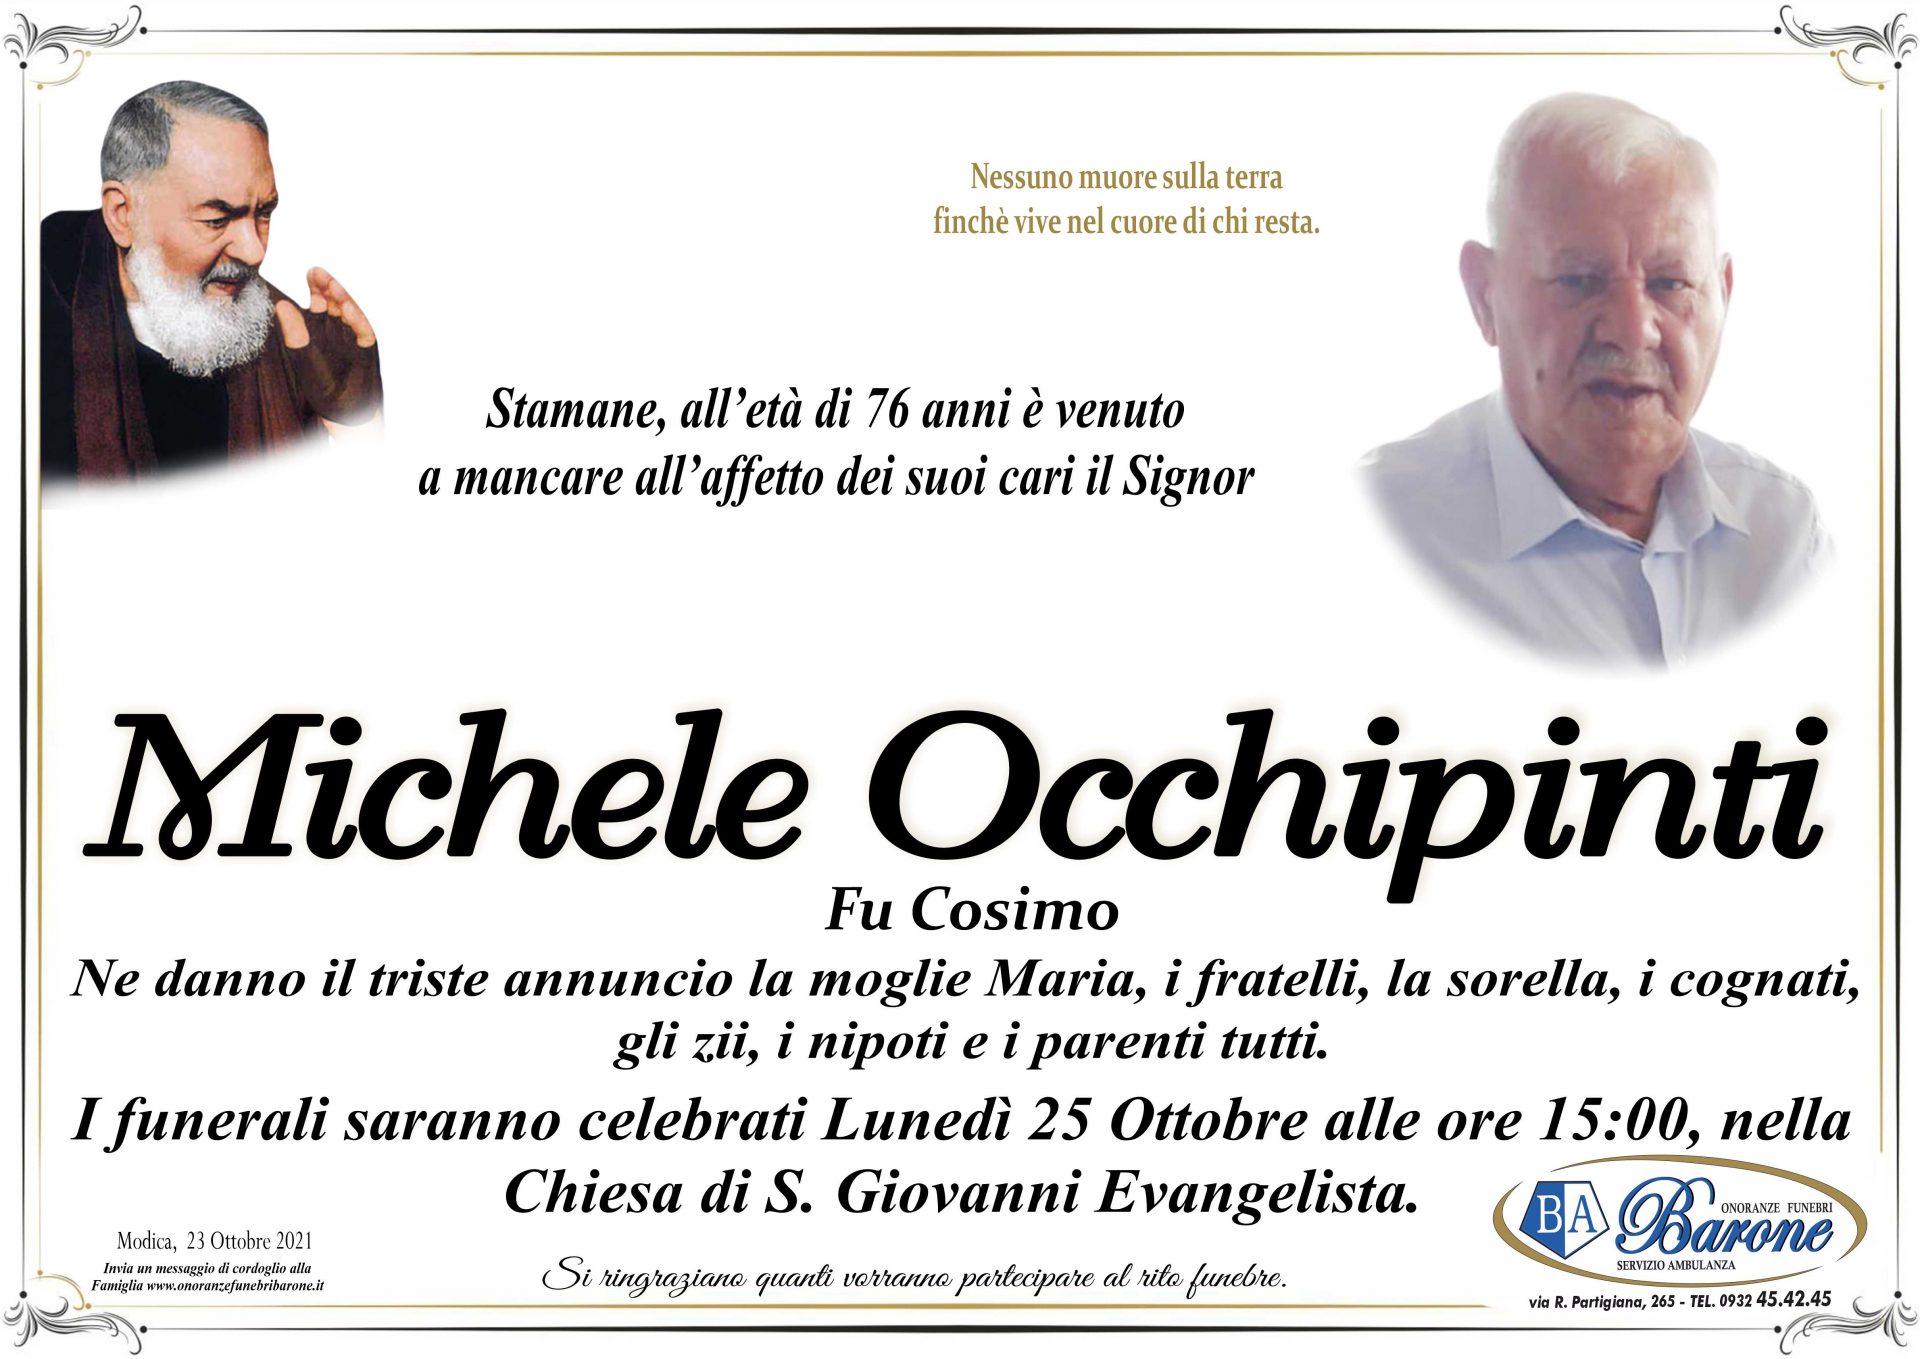 Michele Occhipinti